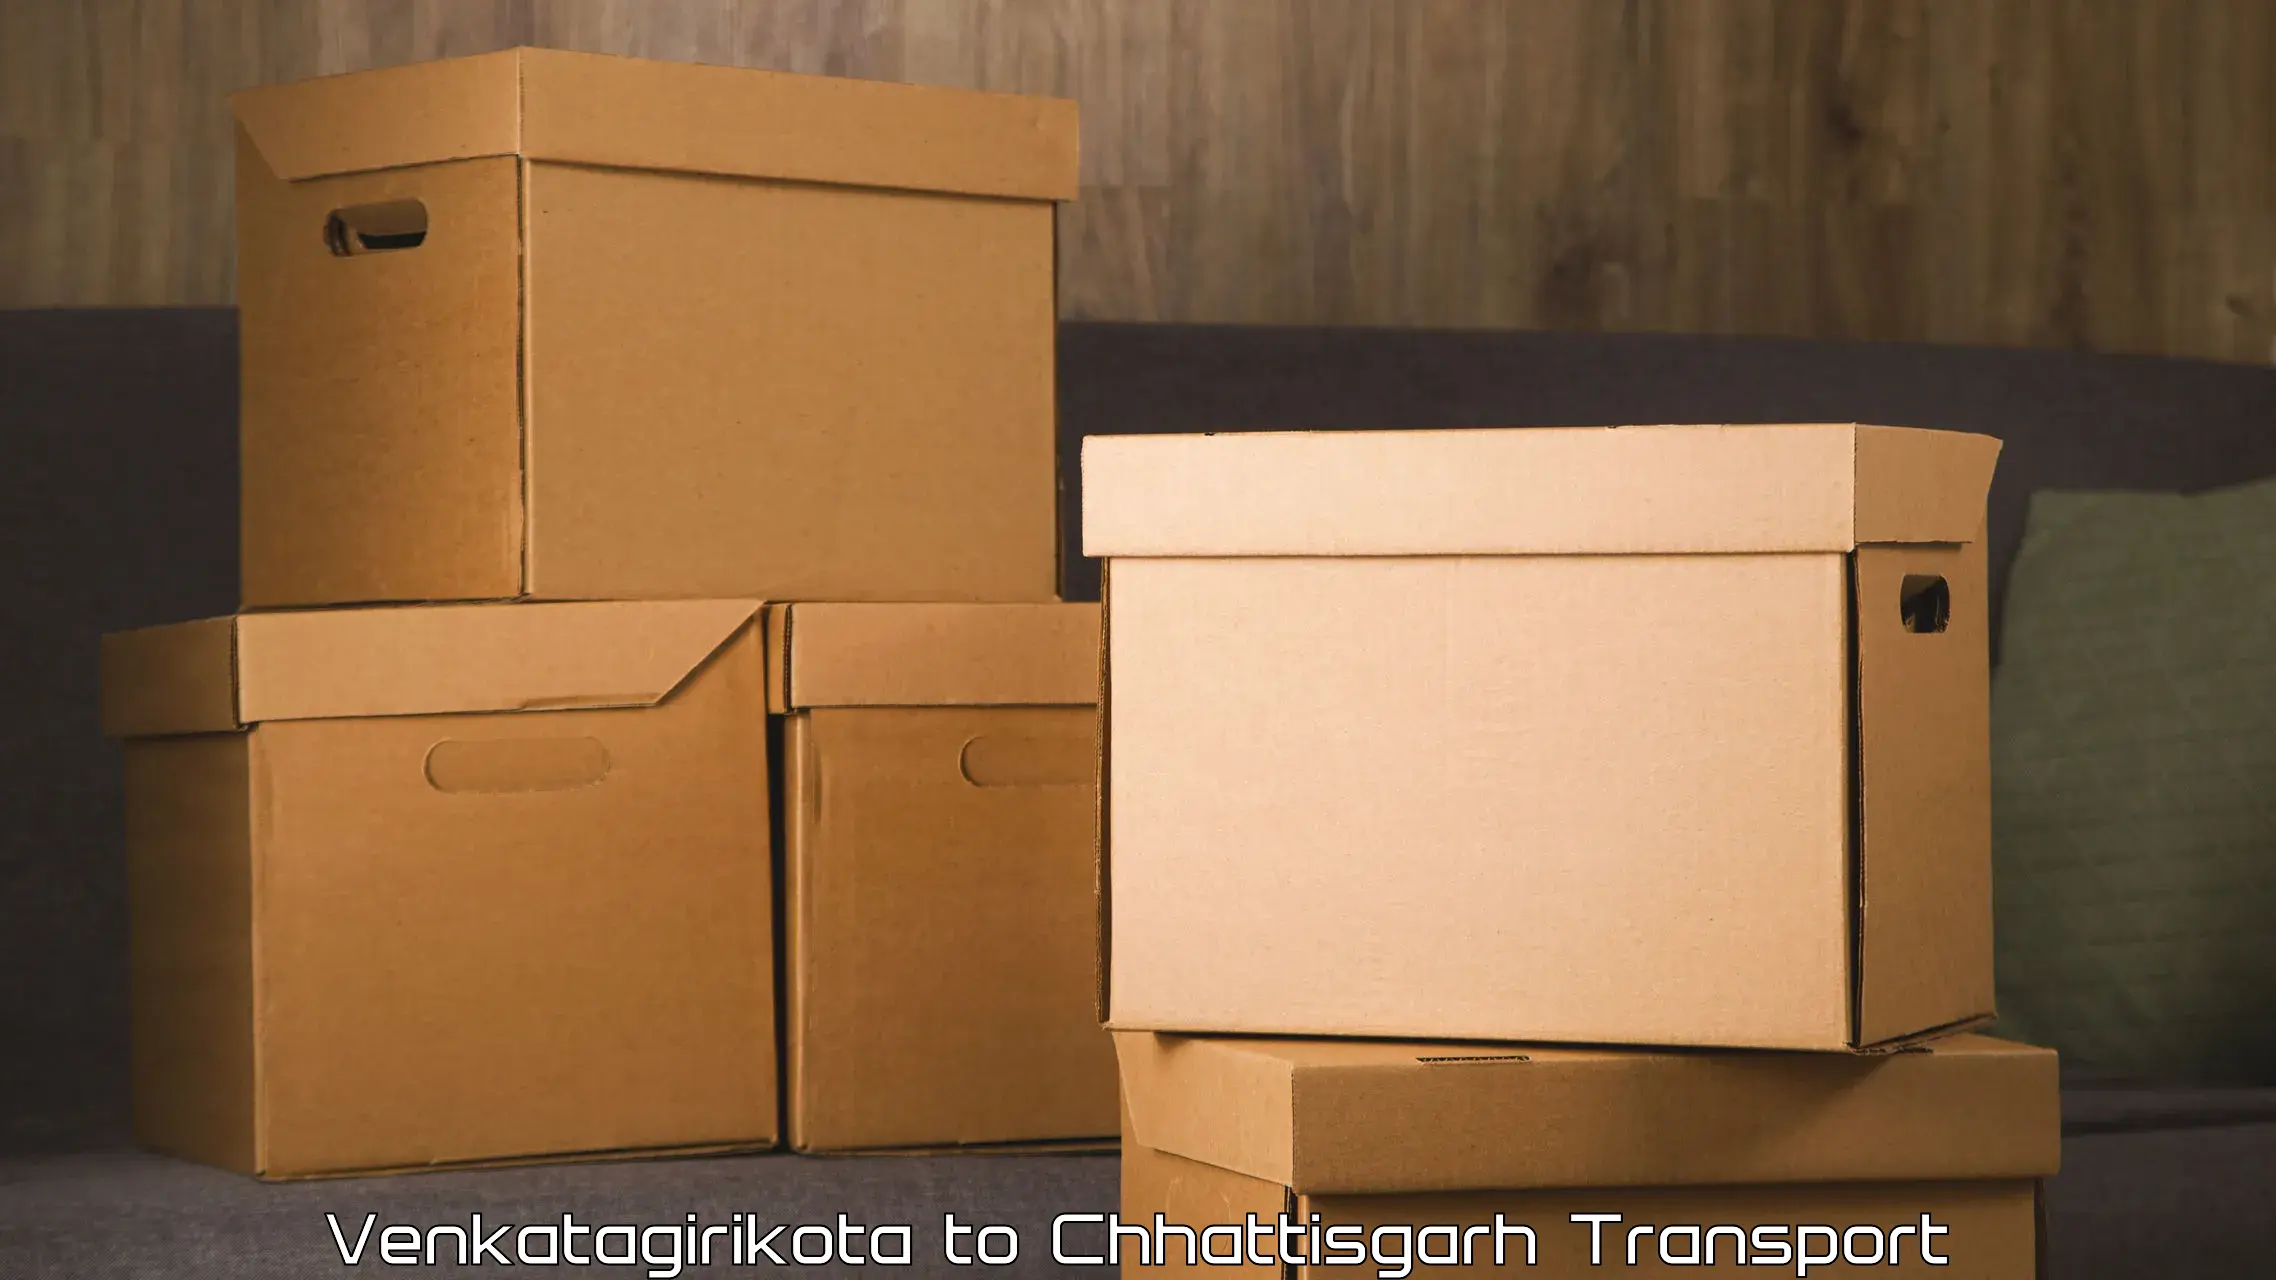 Furniture transport service Venkatagirikota to Bhatgaon